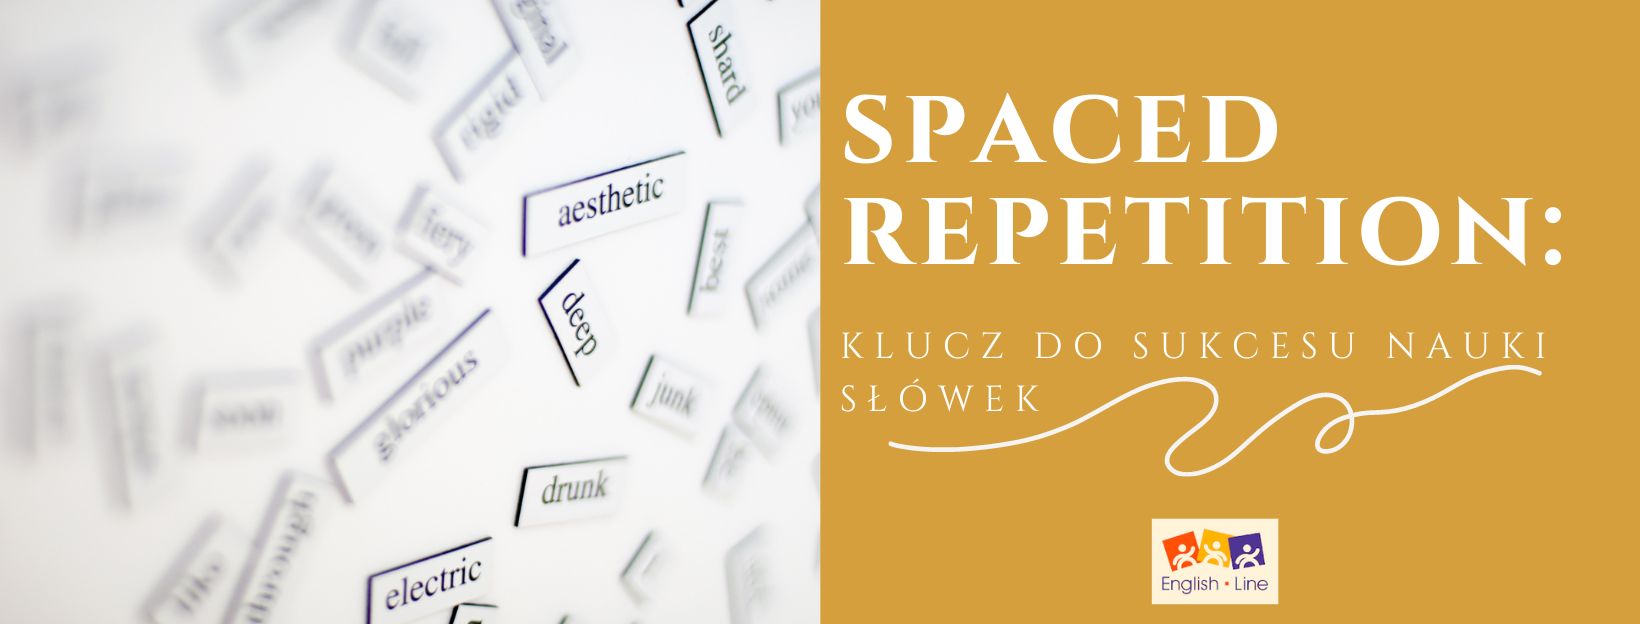 Spaced repetition: klucz do sukcesu nauki słówek